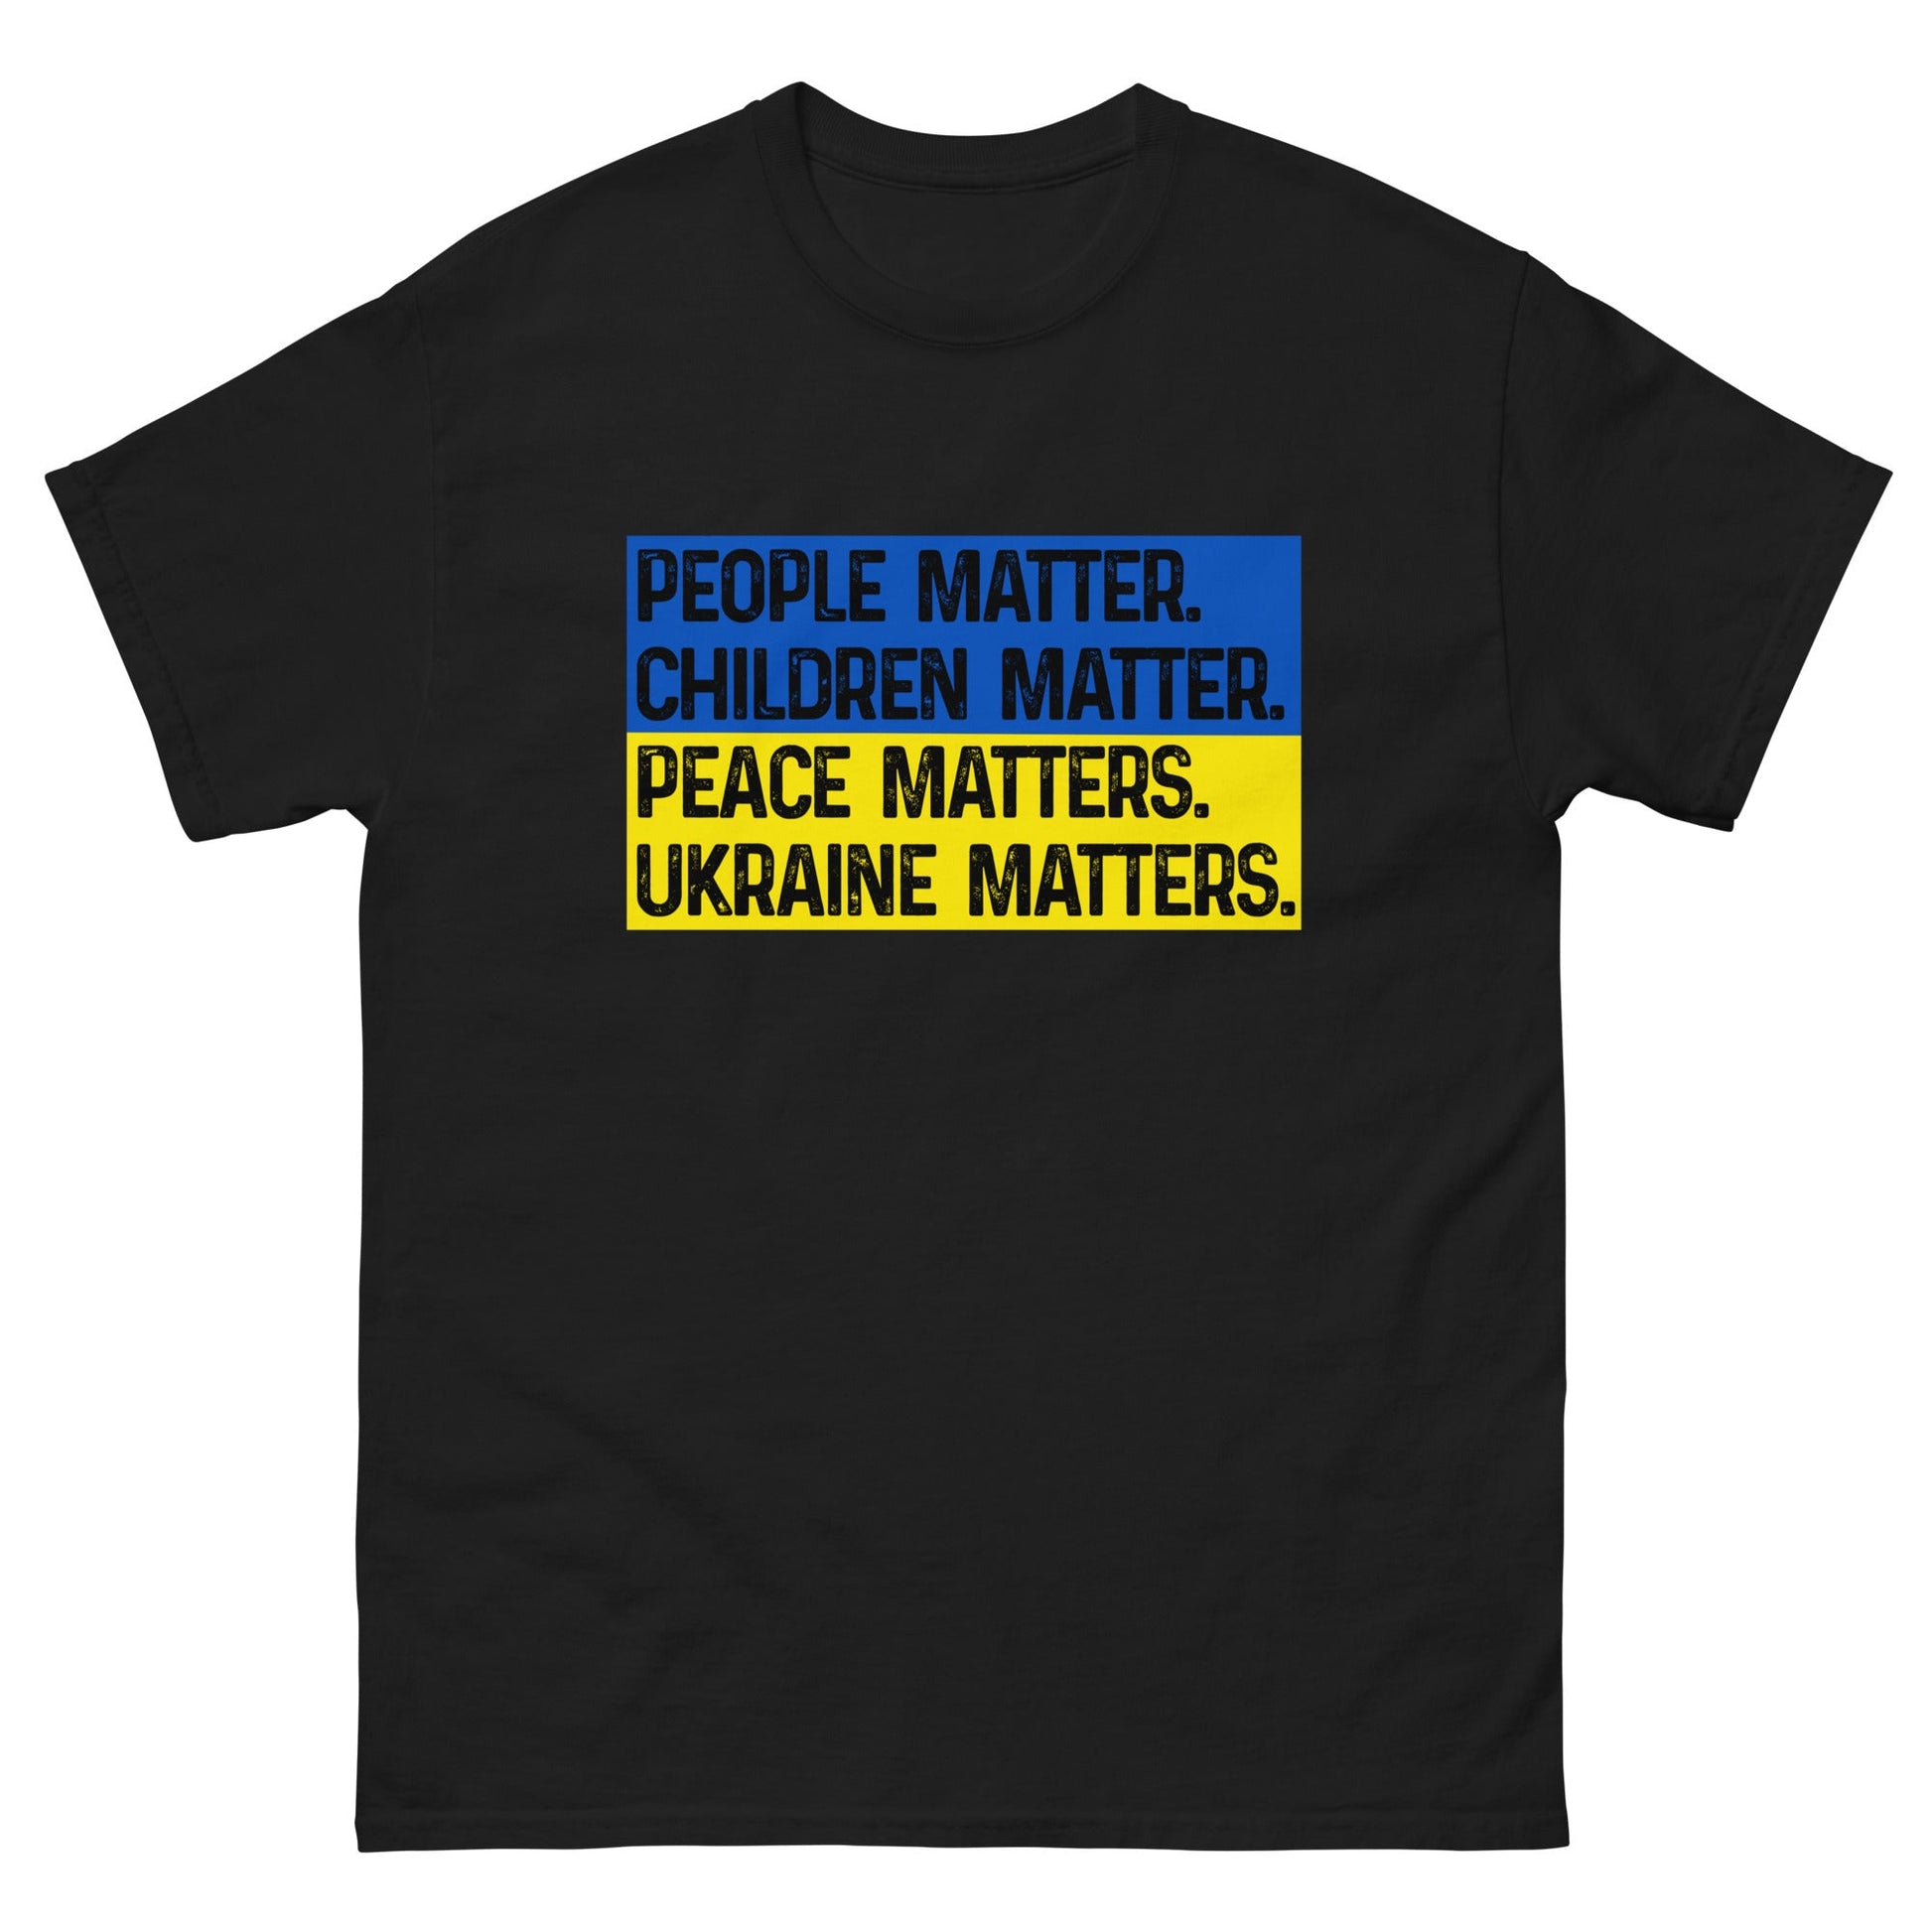 Ukraine Matters T-shirt